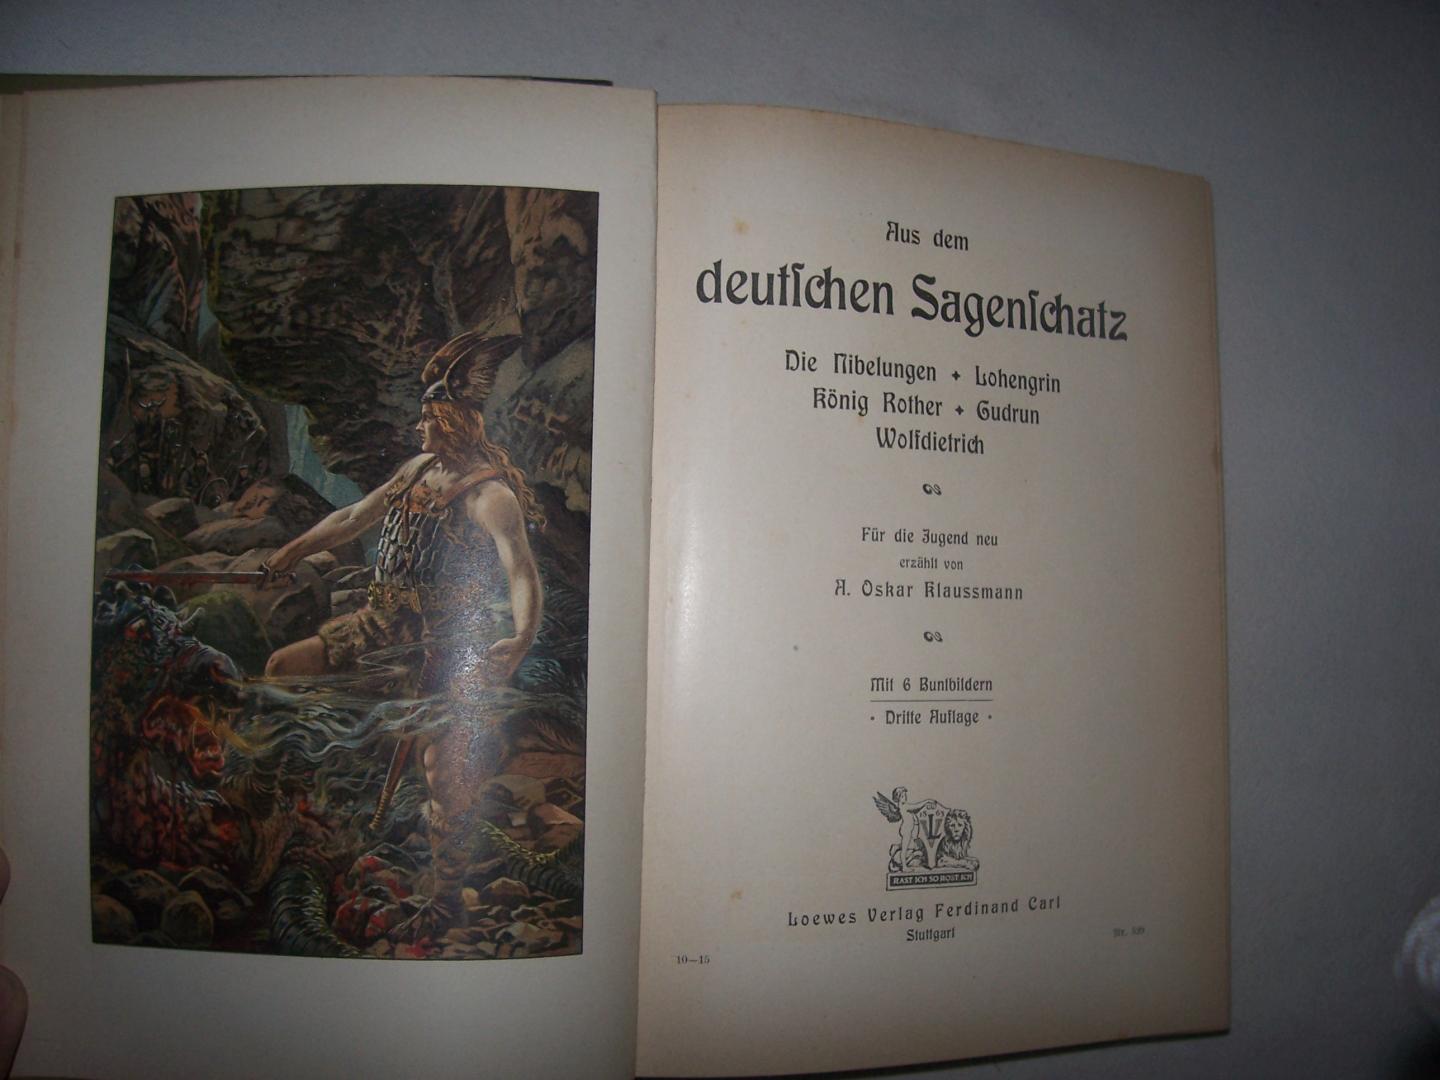 Klaussmann, A.Oskar - Aus dem deutschen Sagenschatz. Die Nibelungen. Lohengrin. Konig Rother. Gudrun. Wolfdietrich.